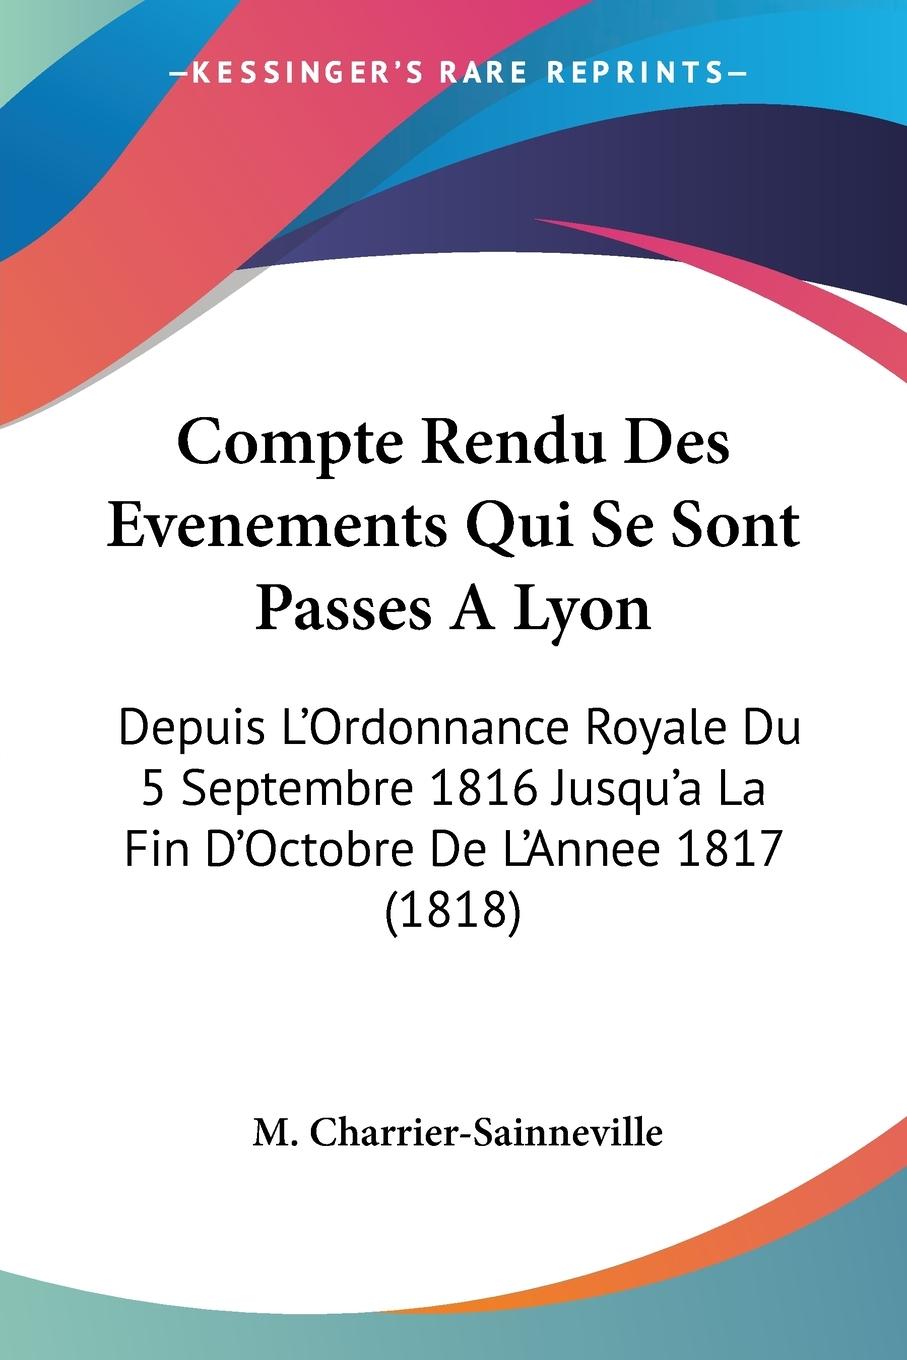 Compte Rendu Des Evenements Qui Se Sont Passes A Lyon - Charrier-Sainneville, M.